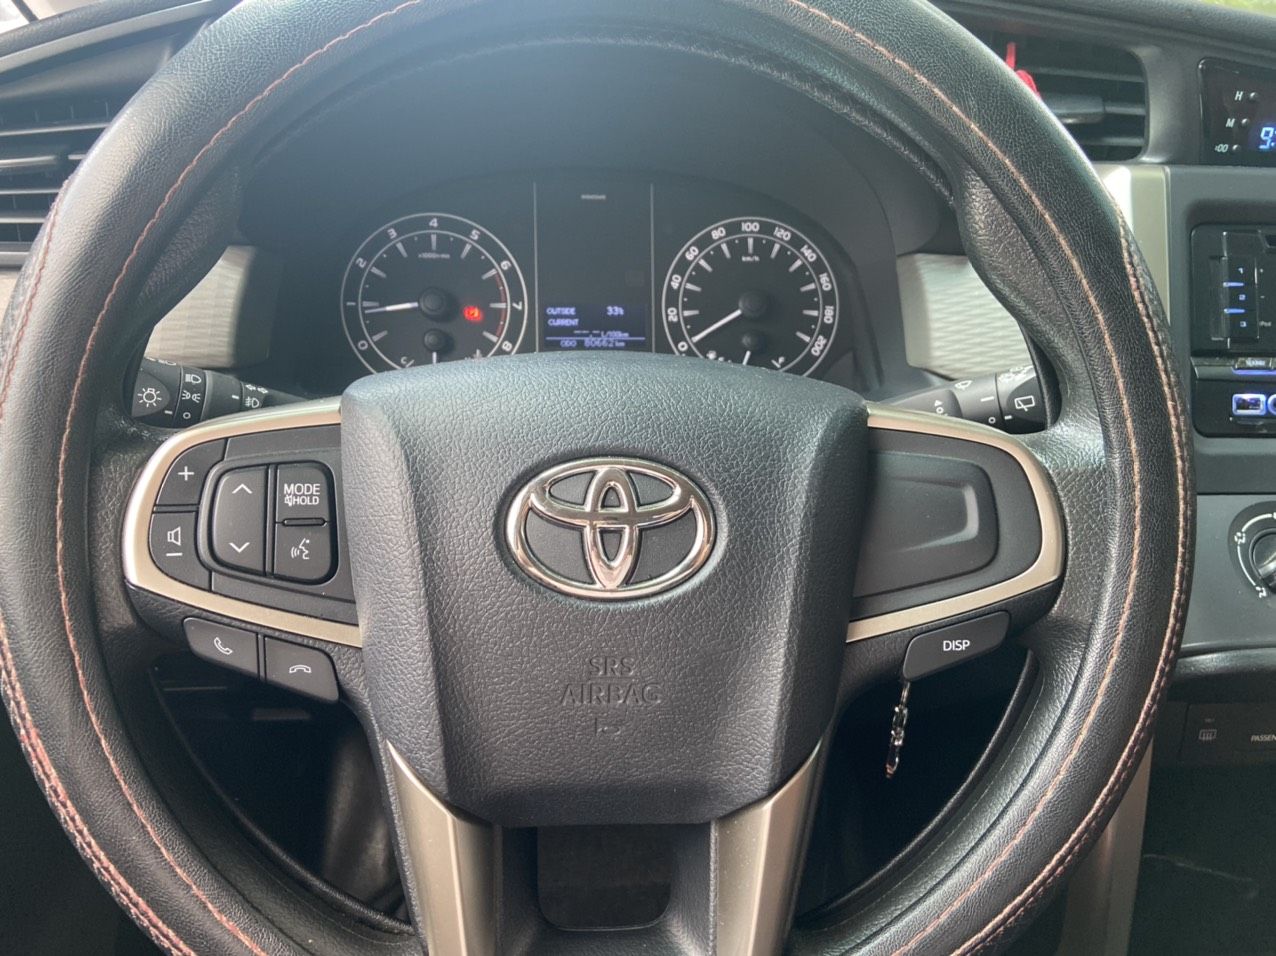 Toyota Innova 2019 - Giấy tờ đầy đủ, 1 chủ dùng từ đầu, nội ngoại thất nguyên zin